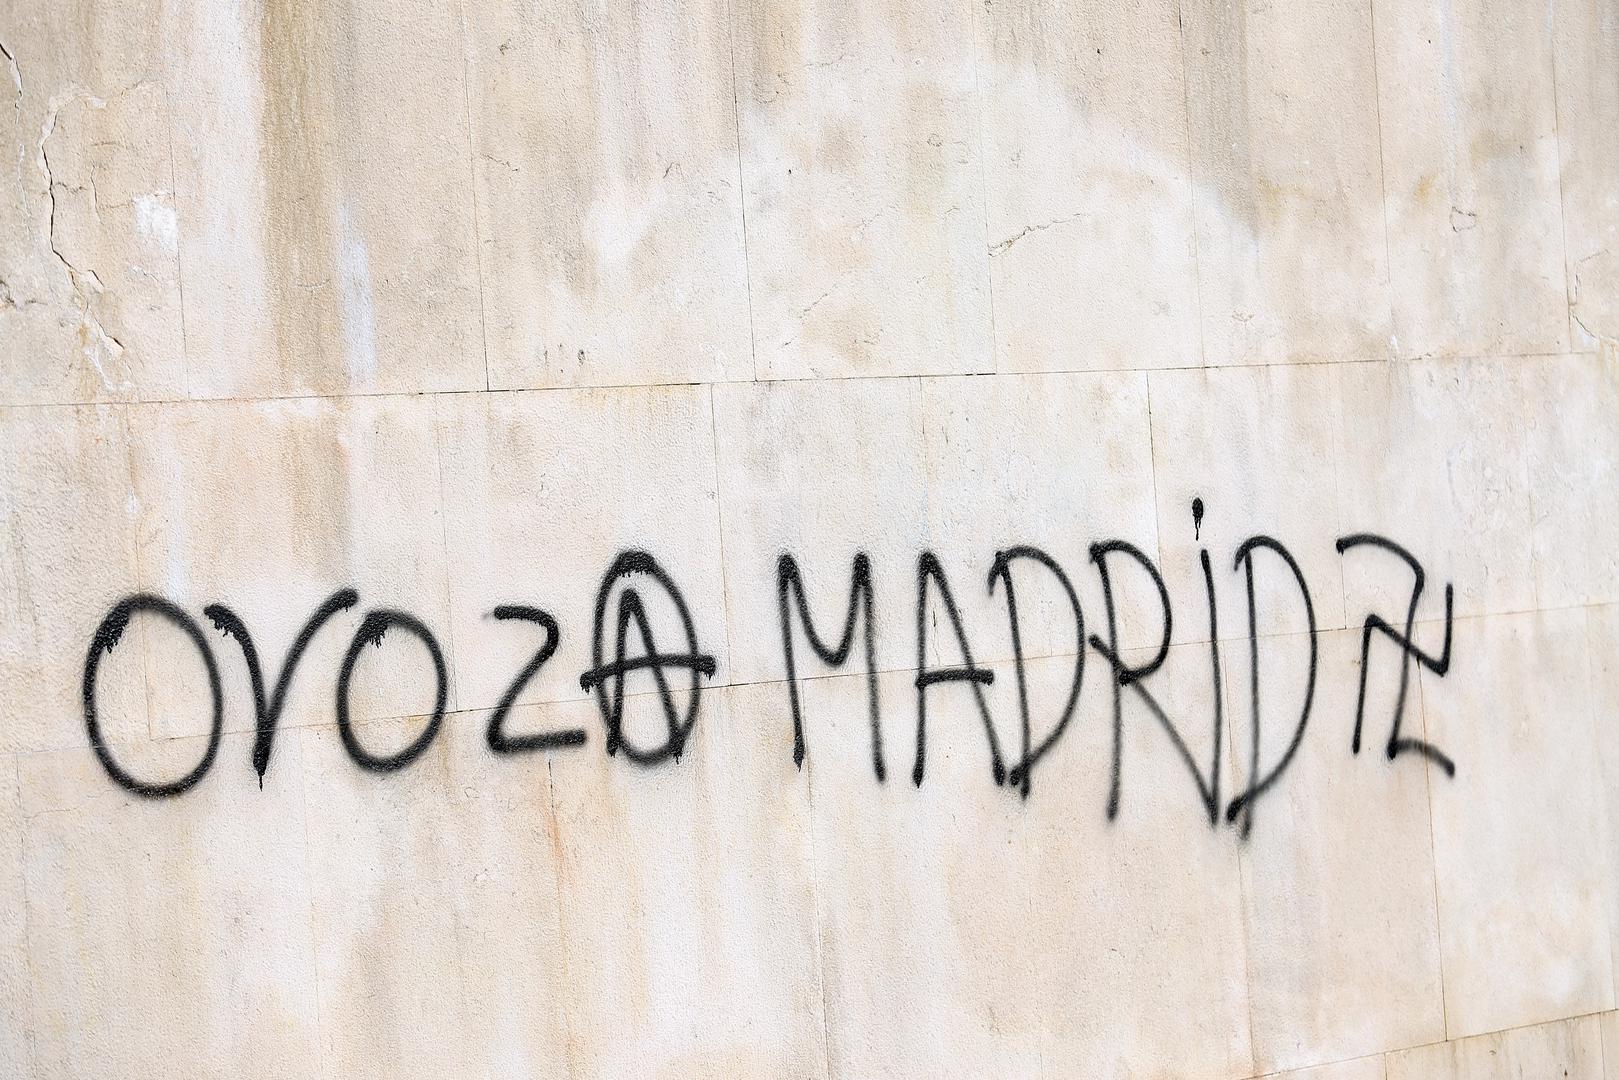 Na spomenicima pogubljenim antifaštistima našarani su nacistički i fašistički simboli, kukasti križevi našarani naopako te ustaška slova 'U', a centralni spomenik žrtvama fašističkog terora nagrđen je porukom 'Ovo je za Madrid', u koju je uklopljen anarhistički simbol, slovo 'A' u krugu.